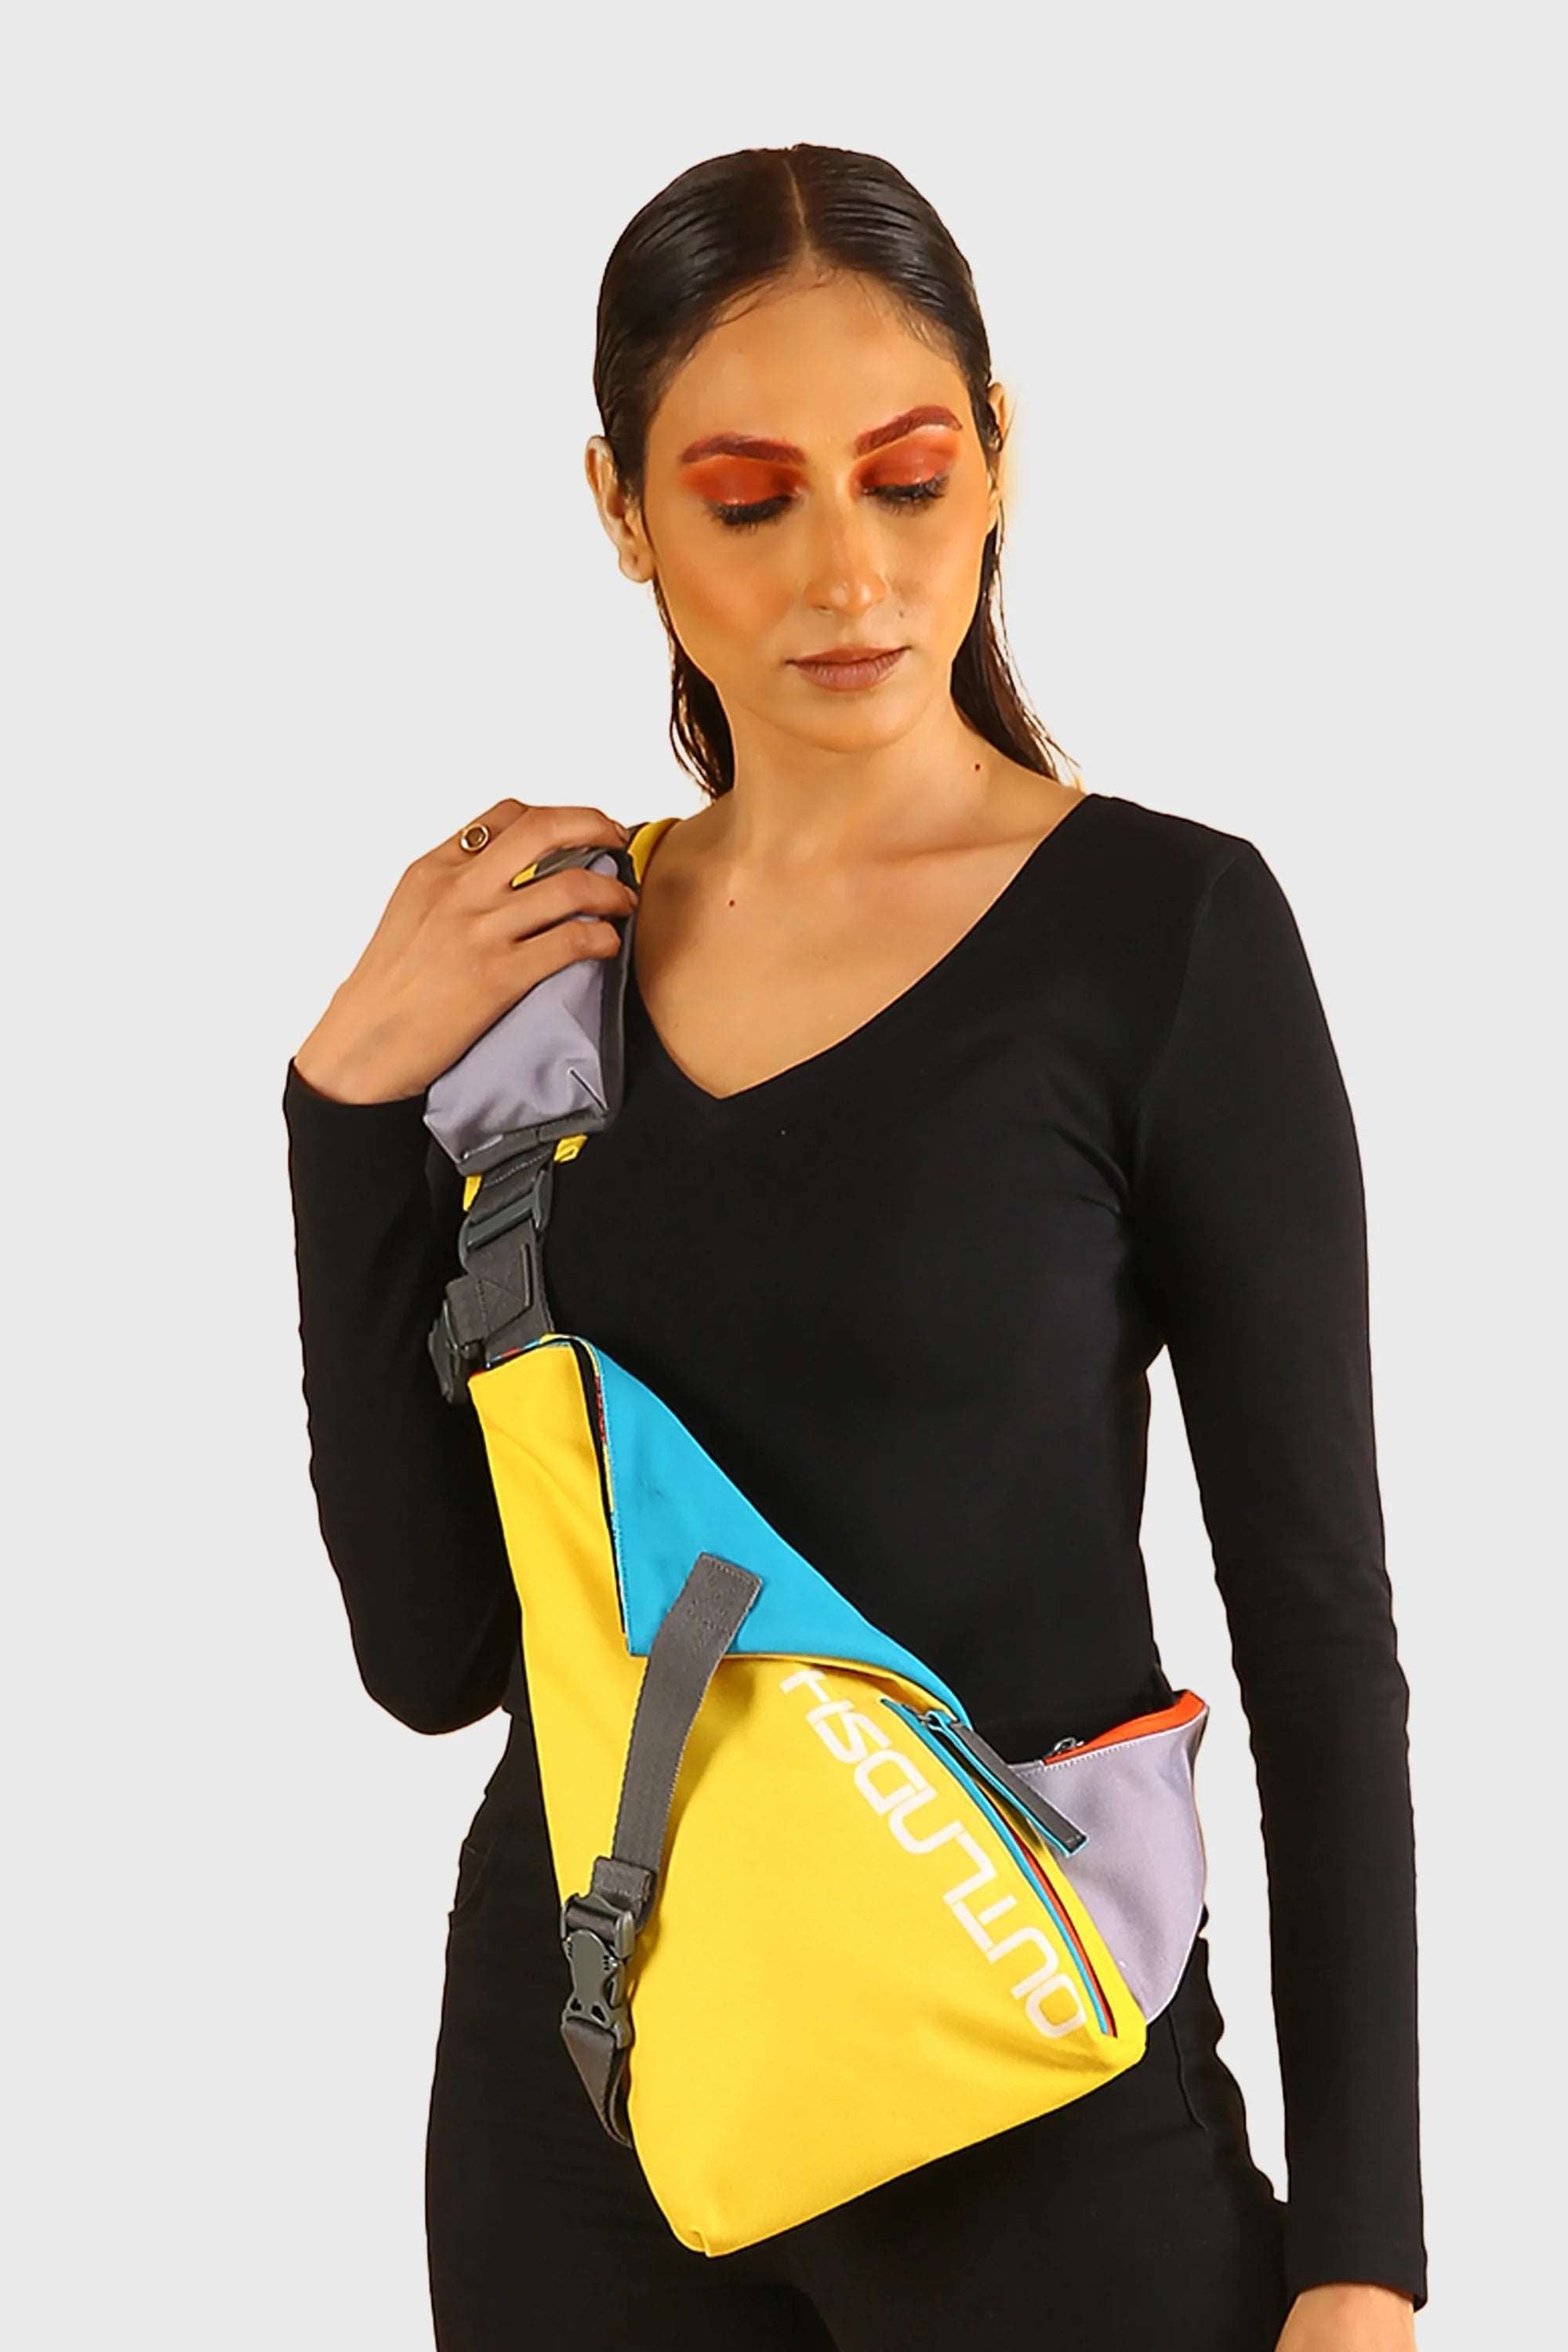 OUTLNDSH Crossbody bag yellow color - sling bag